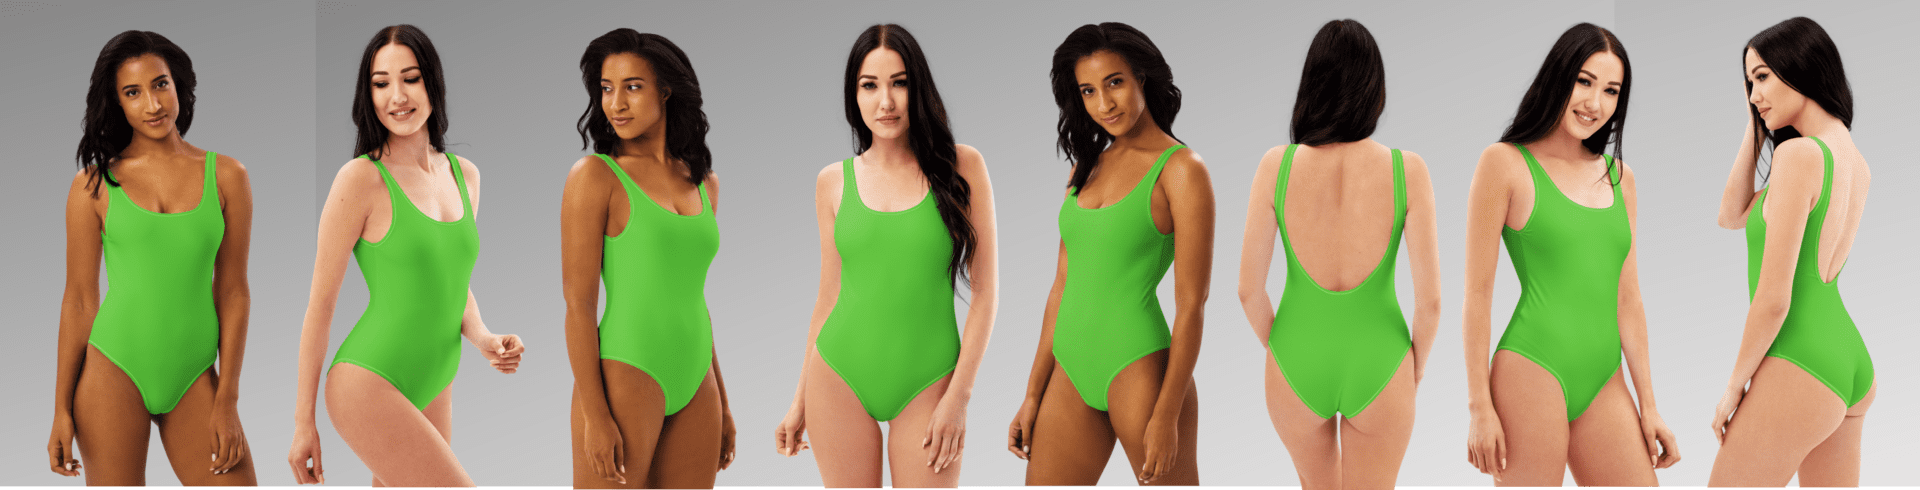 Seven women in green swimsuits.